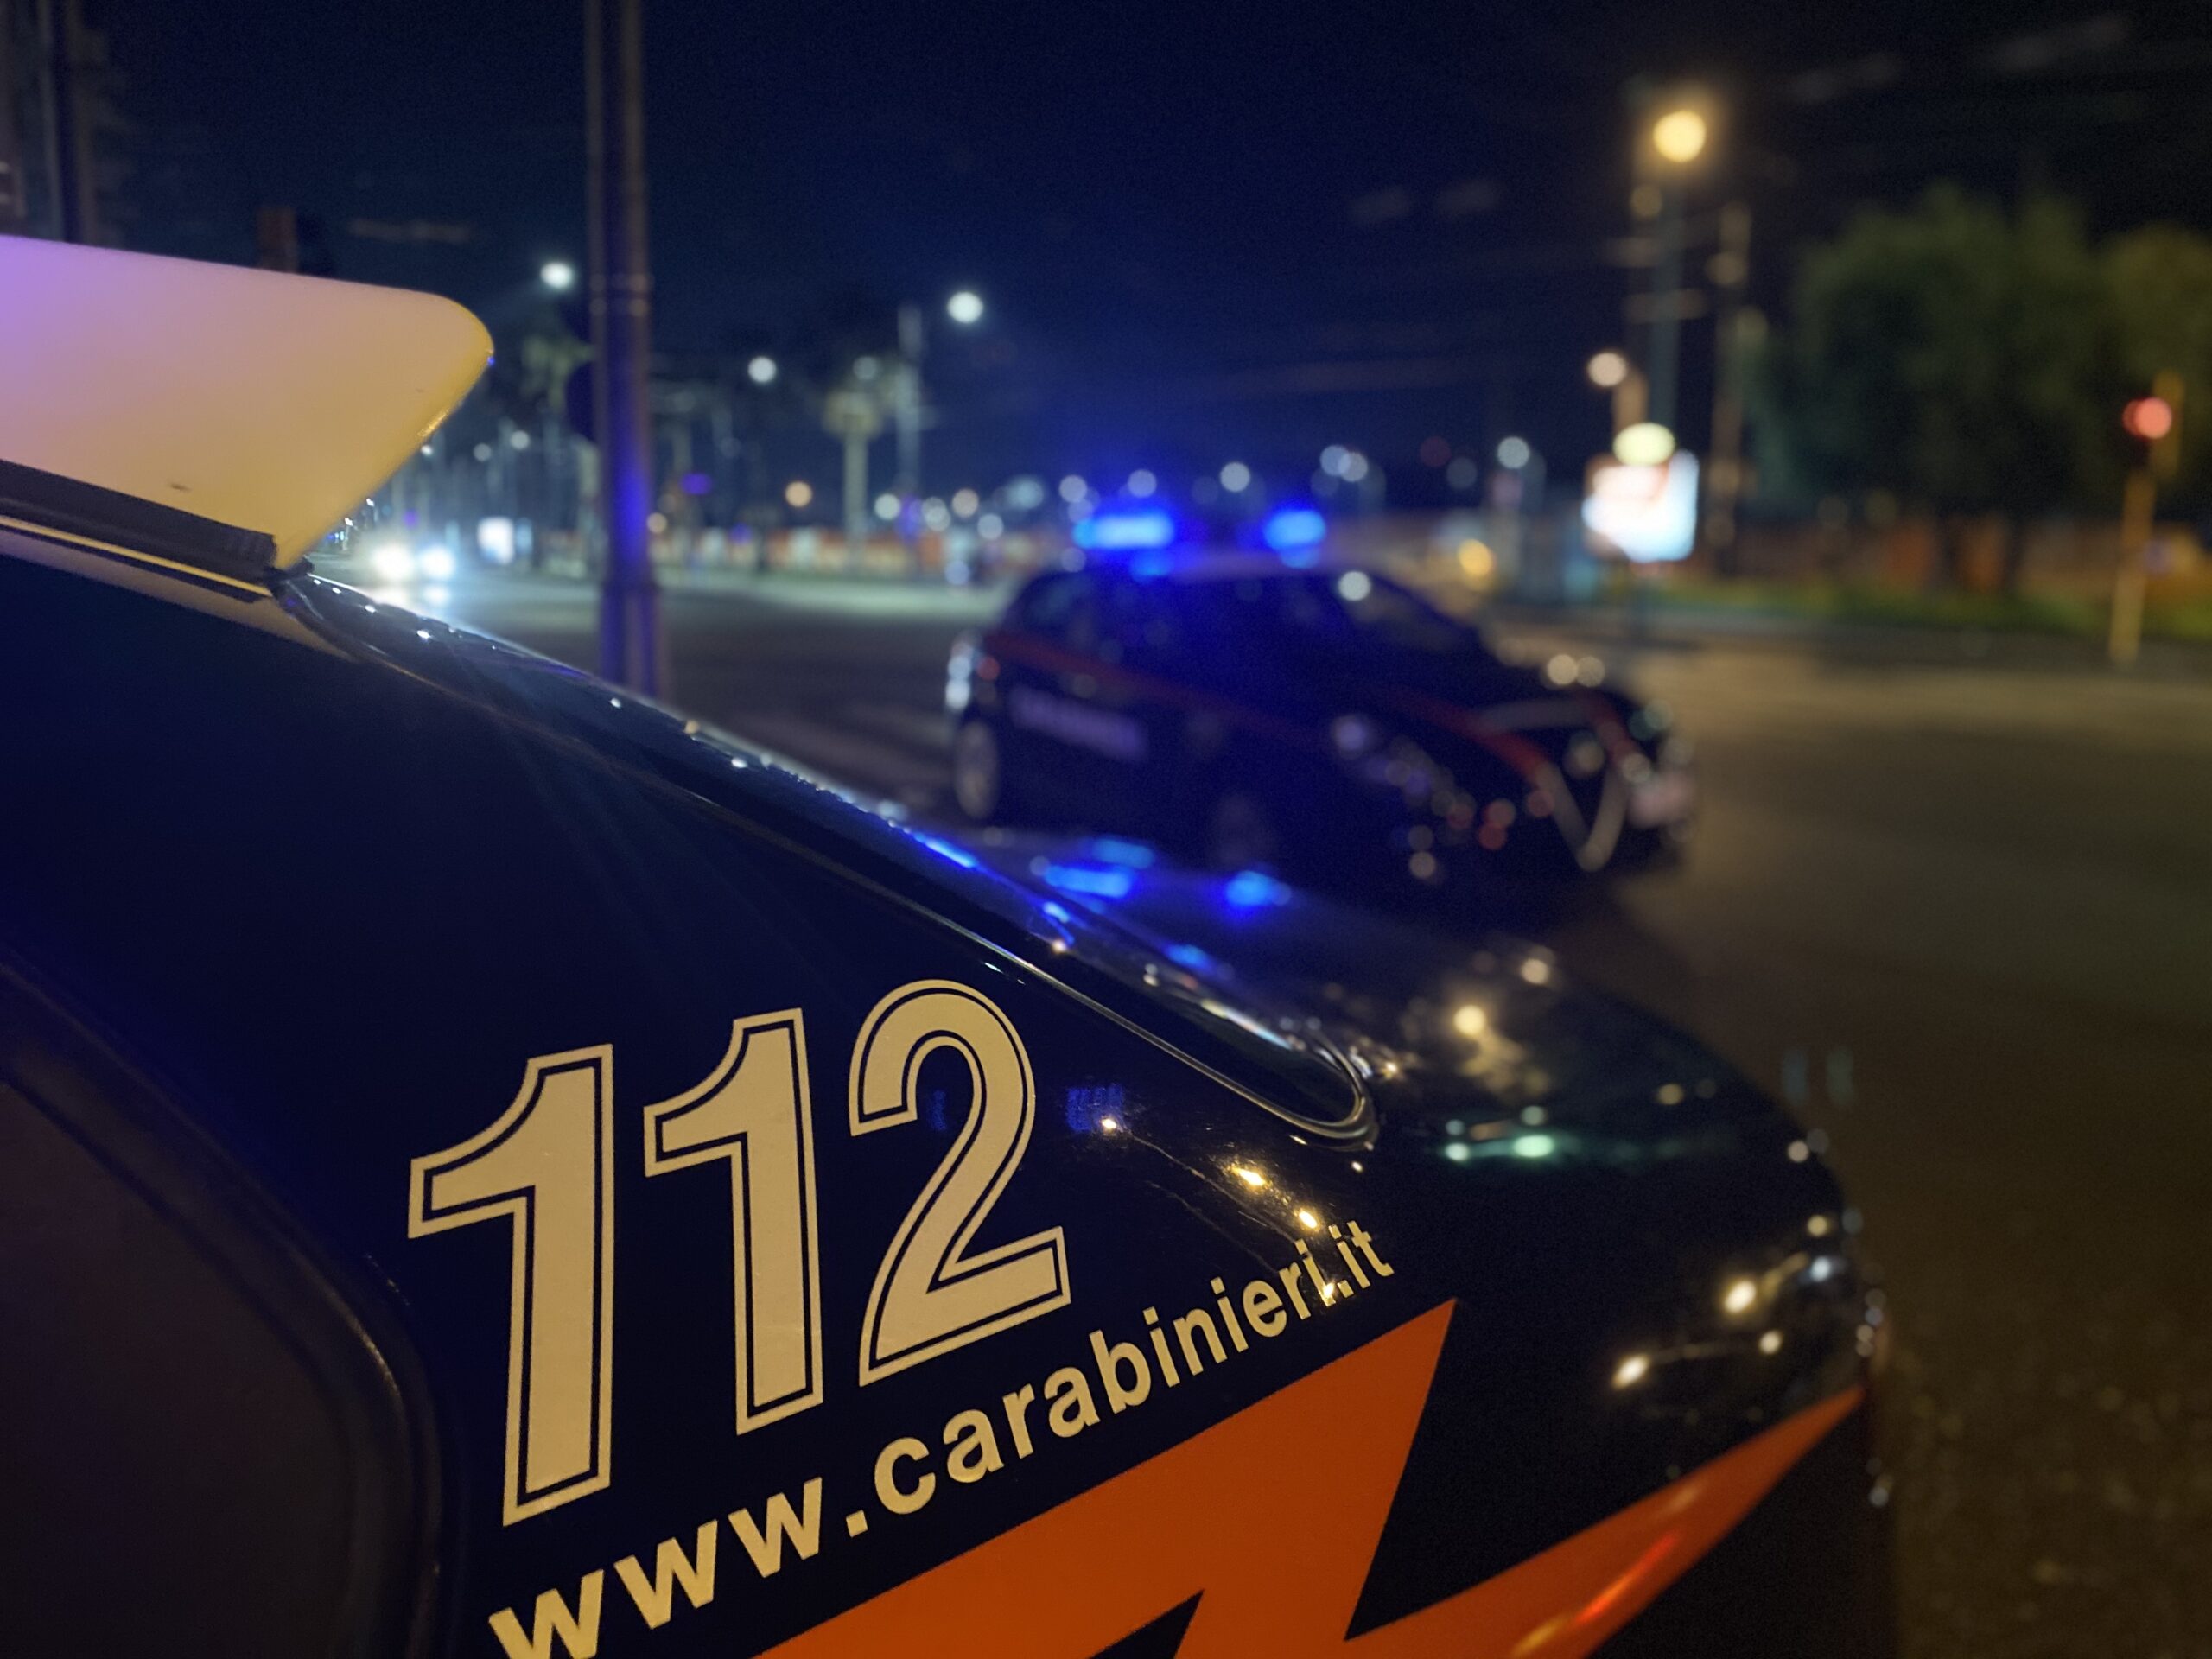 QUARTO/ Ruba auto, sperona i carabinieri ma nella fuga perde patente e telefono: rintracciato e arrestato